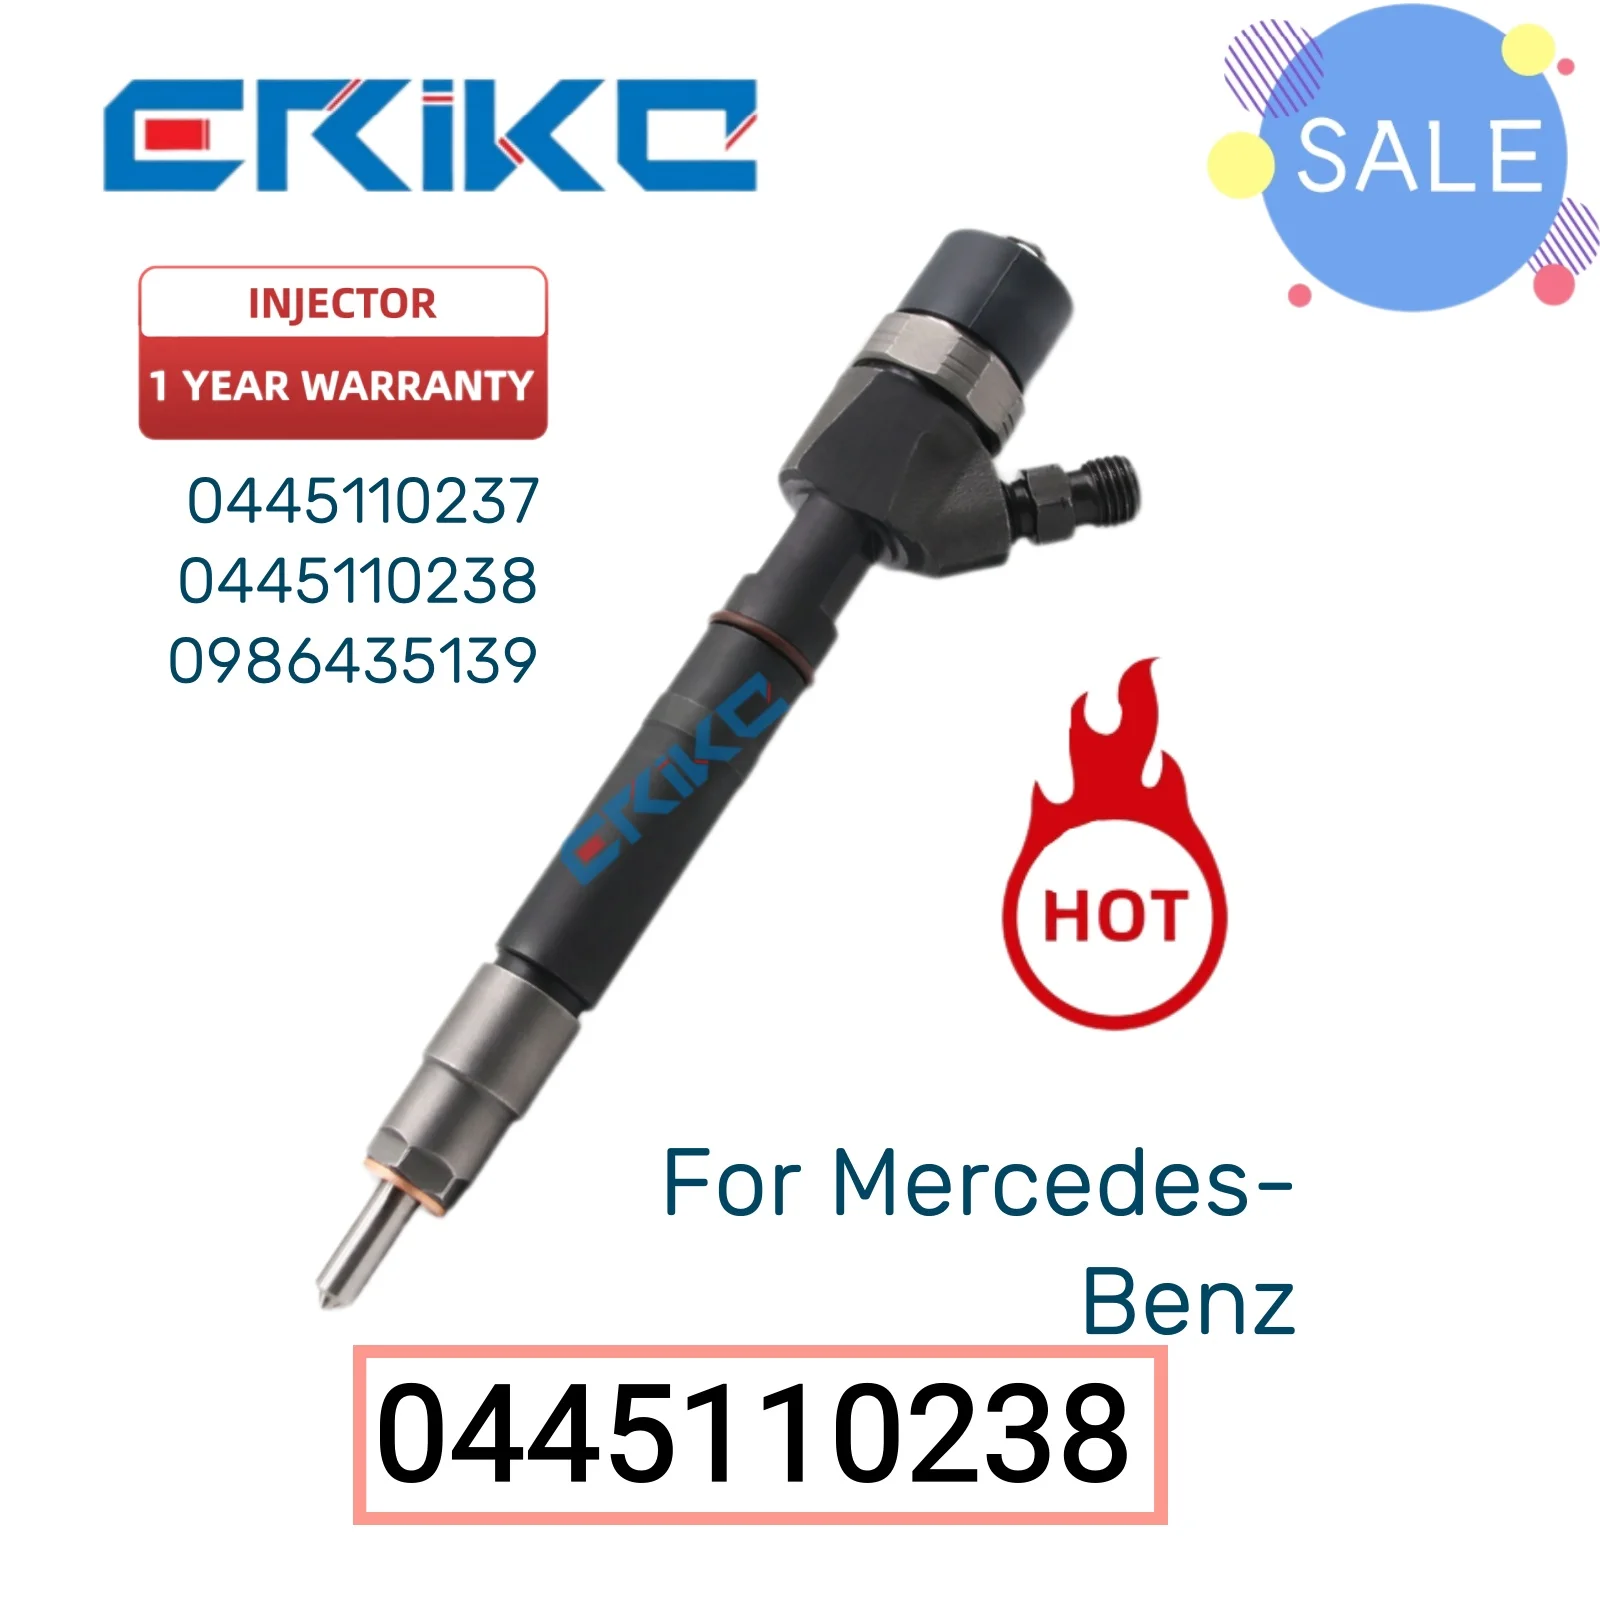 

0445110238 Diesel Injectors 0 445 110 238 Diesel Fuel Injector 0445 110 238 Auto Fuel Pump Injector for Mercedes-Benz